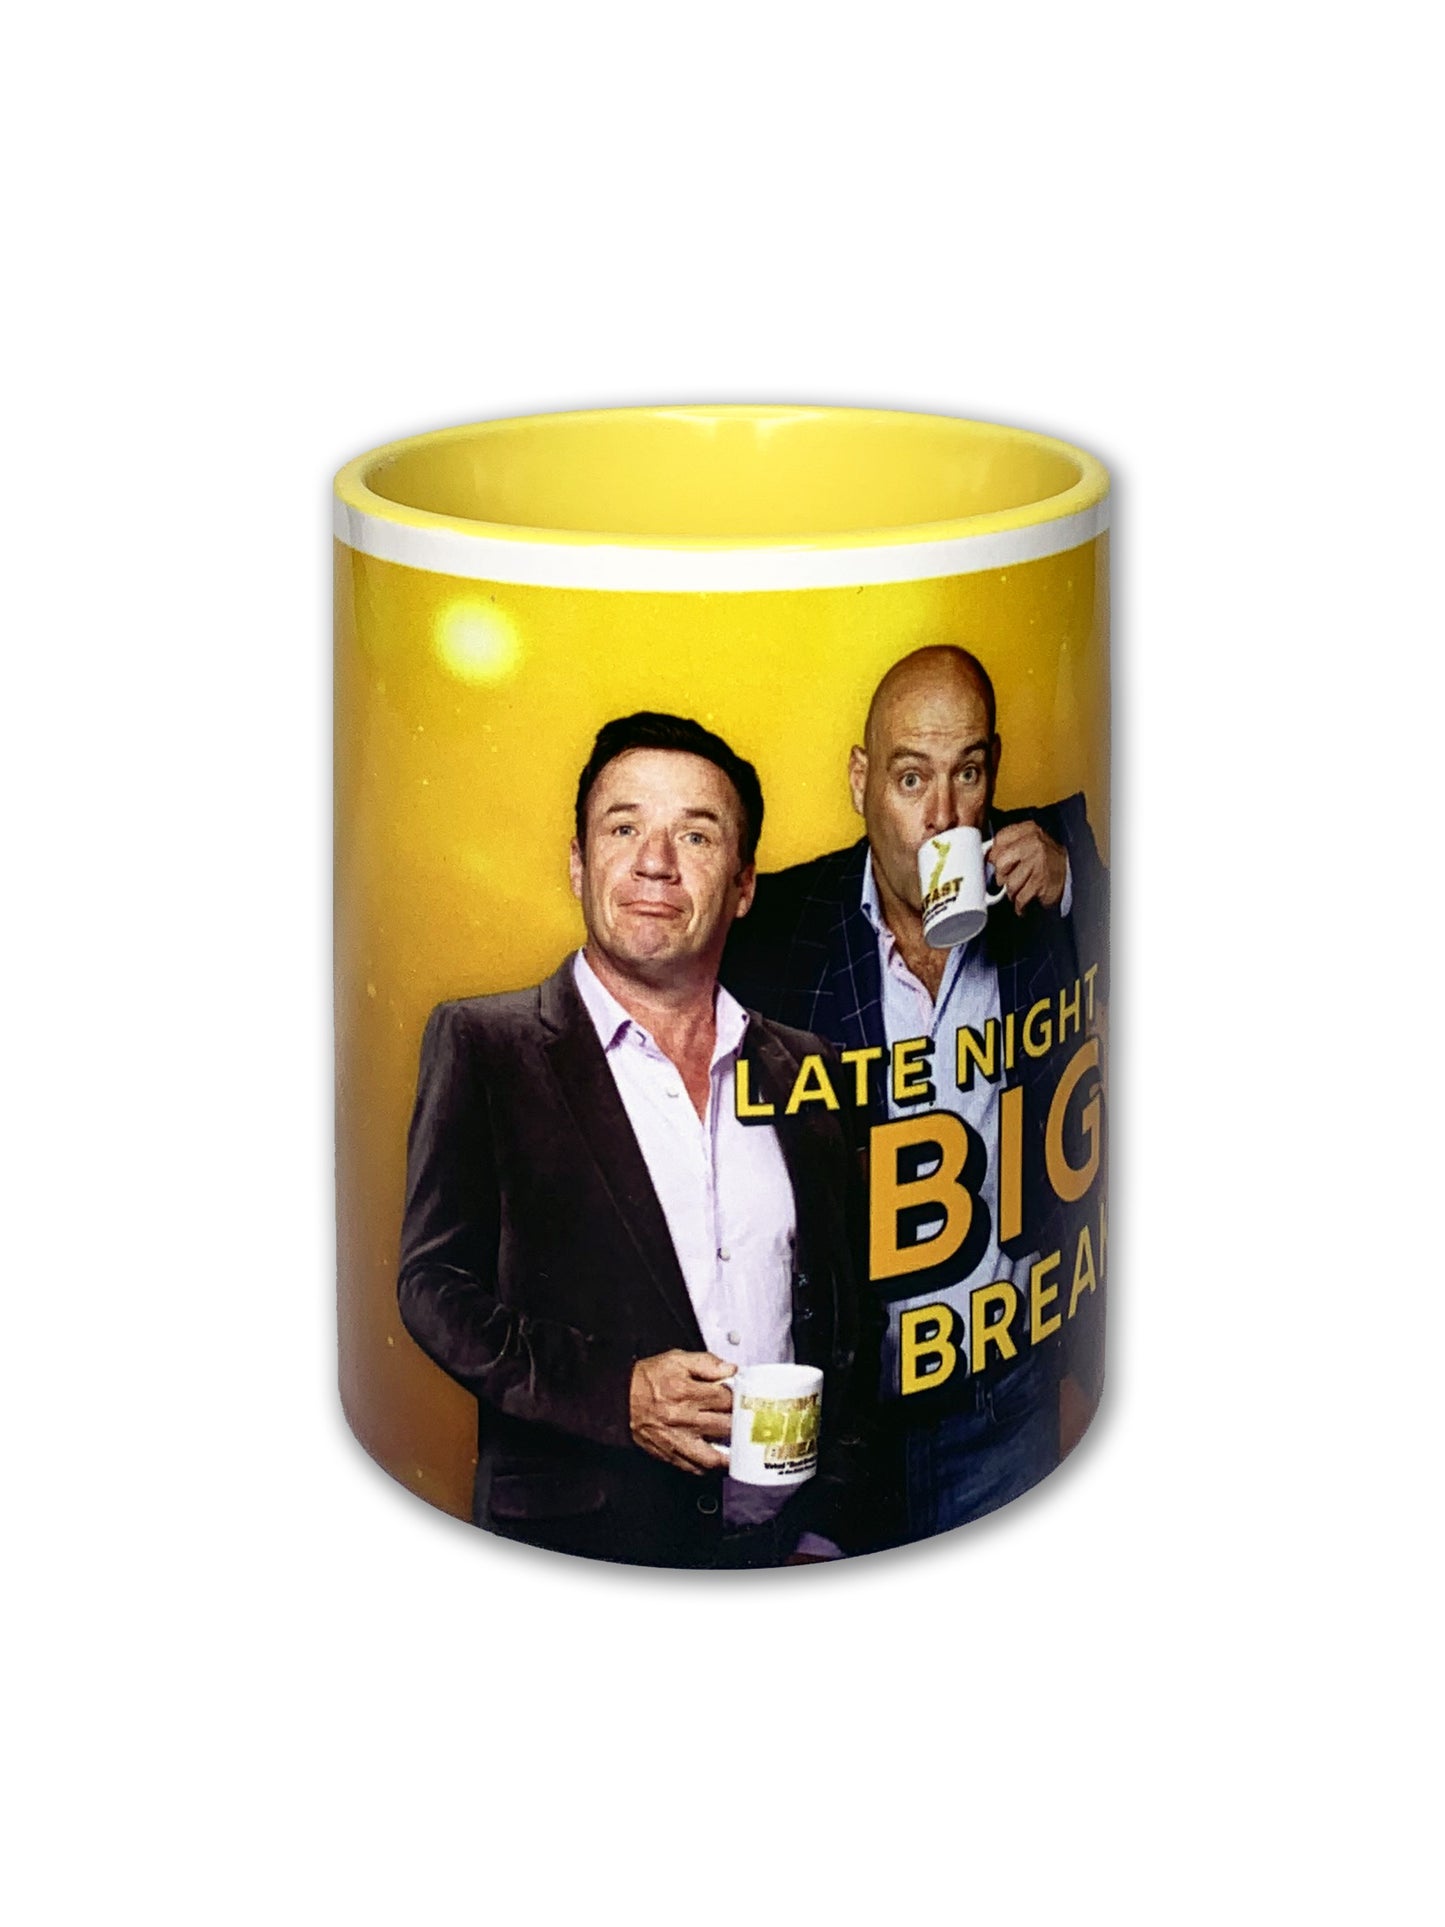 Big Breakfast Mug